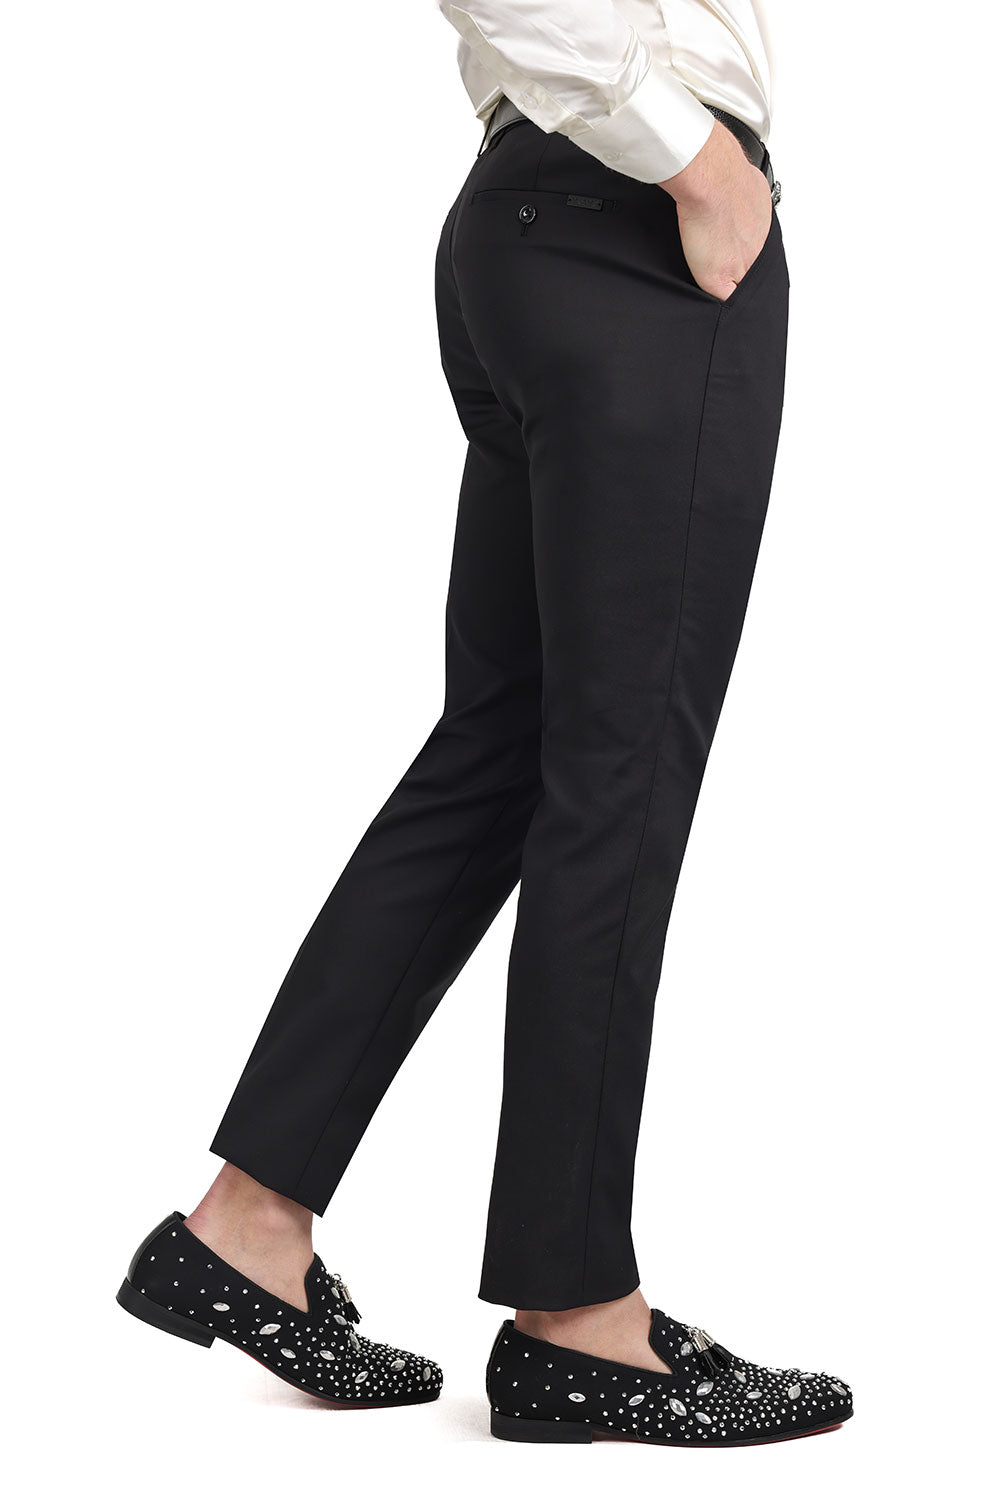 Barabas Men's Premium Plain Solid Color Chino Dress Pants 2CP3080 Black